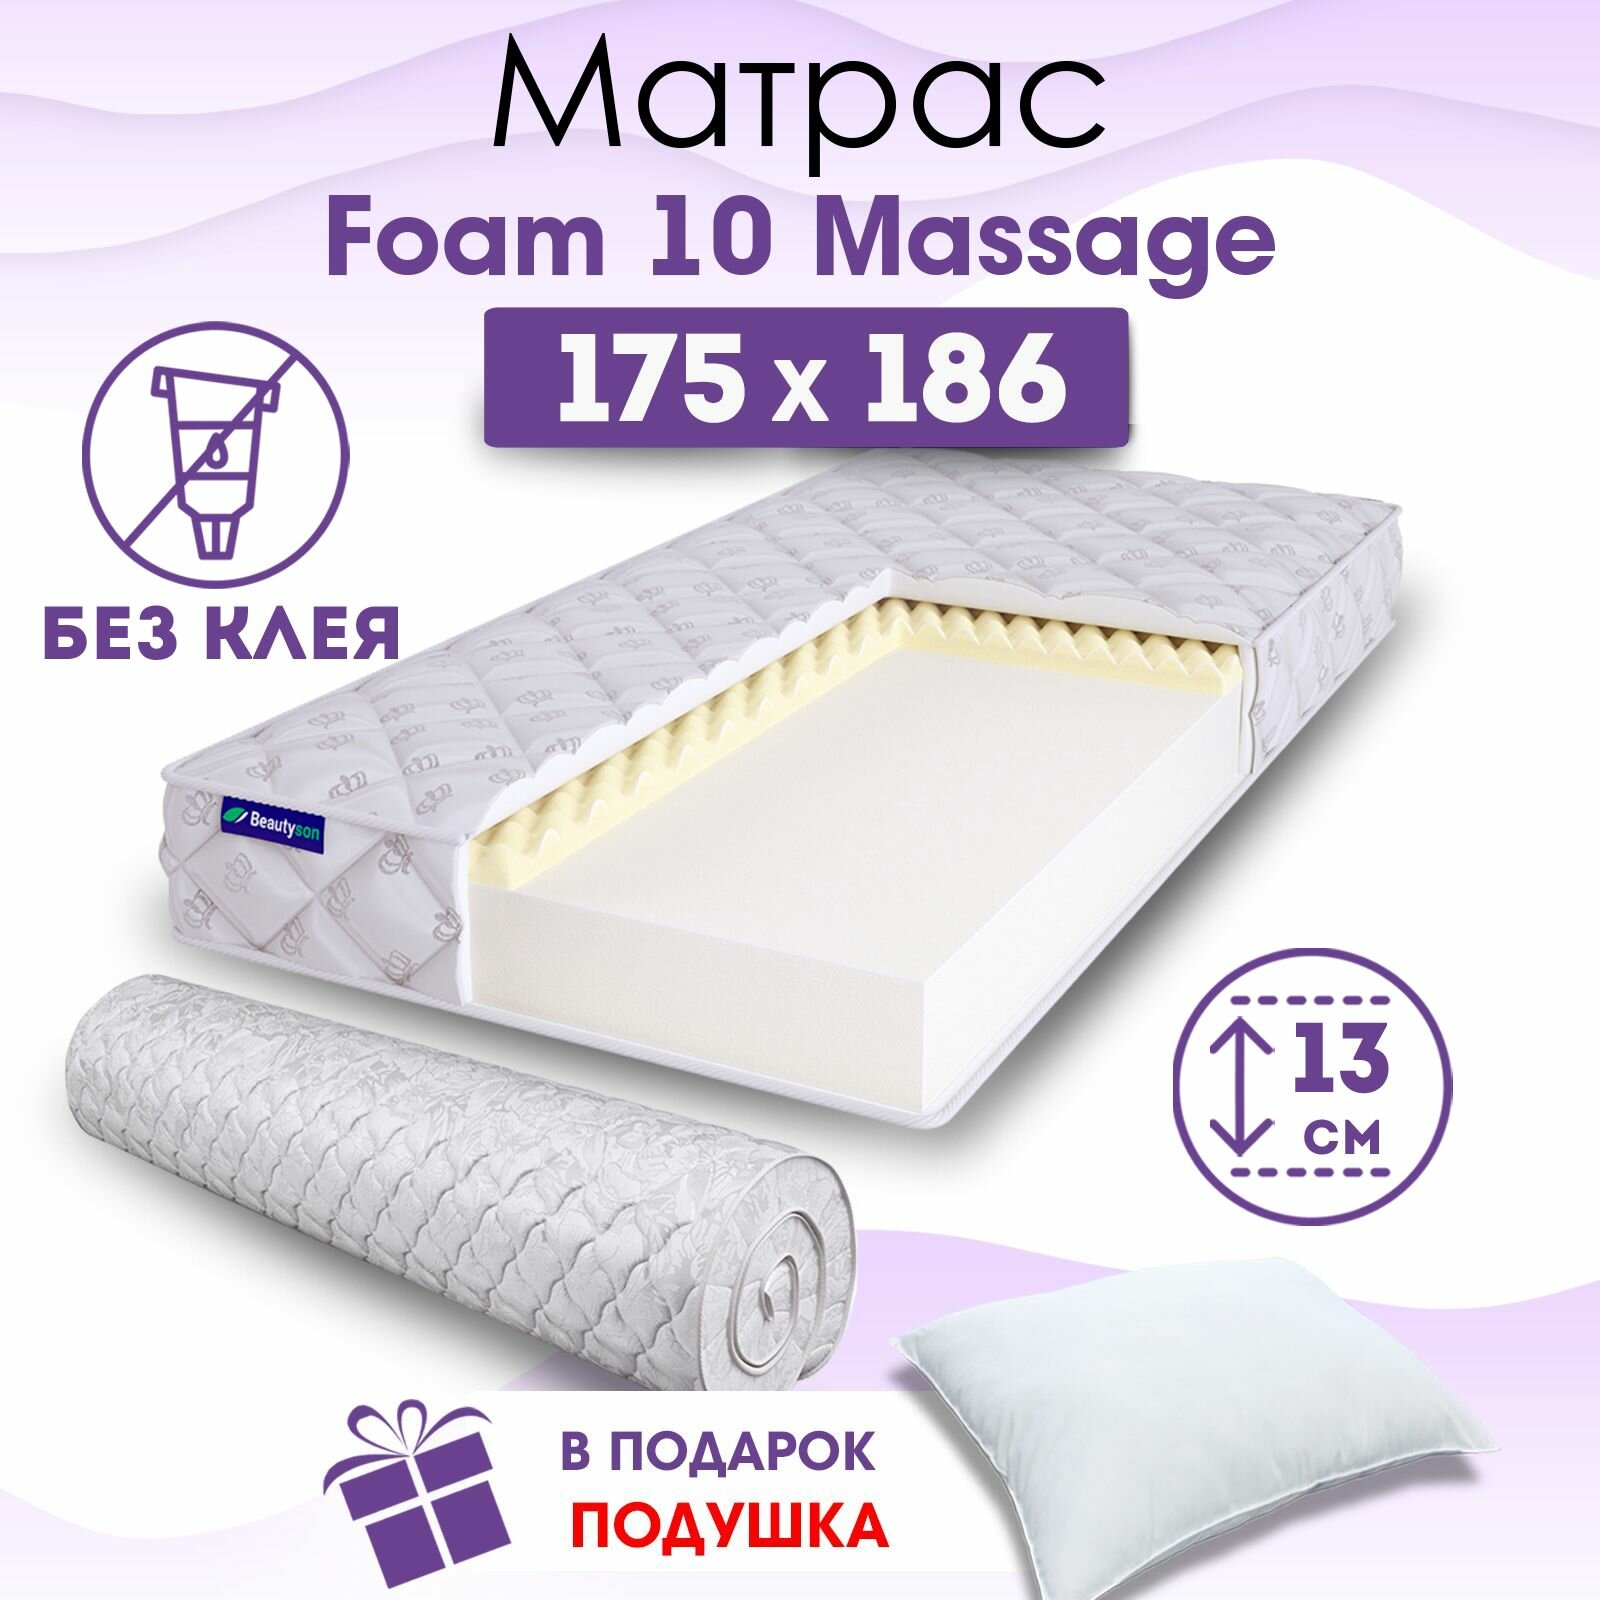 Ортопедический матрас Beautyson Foam 10 Massage без клея, 175х186, 13 см, беспружинный, двухспальный, на кровать, для дивана, умеренно мягкий